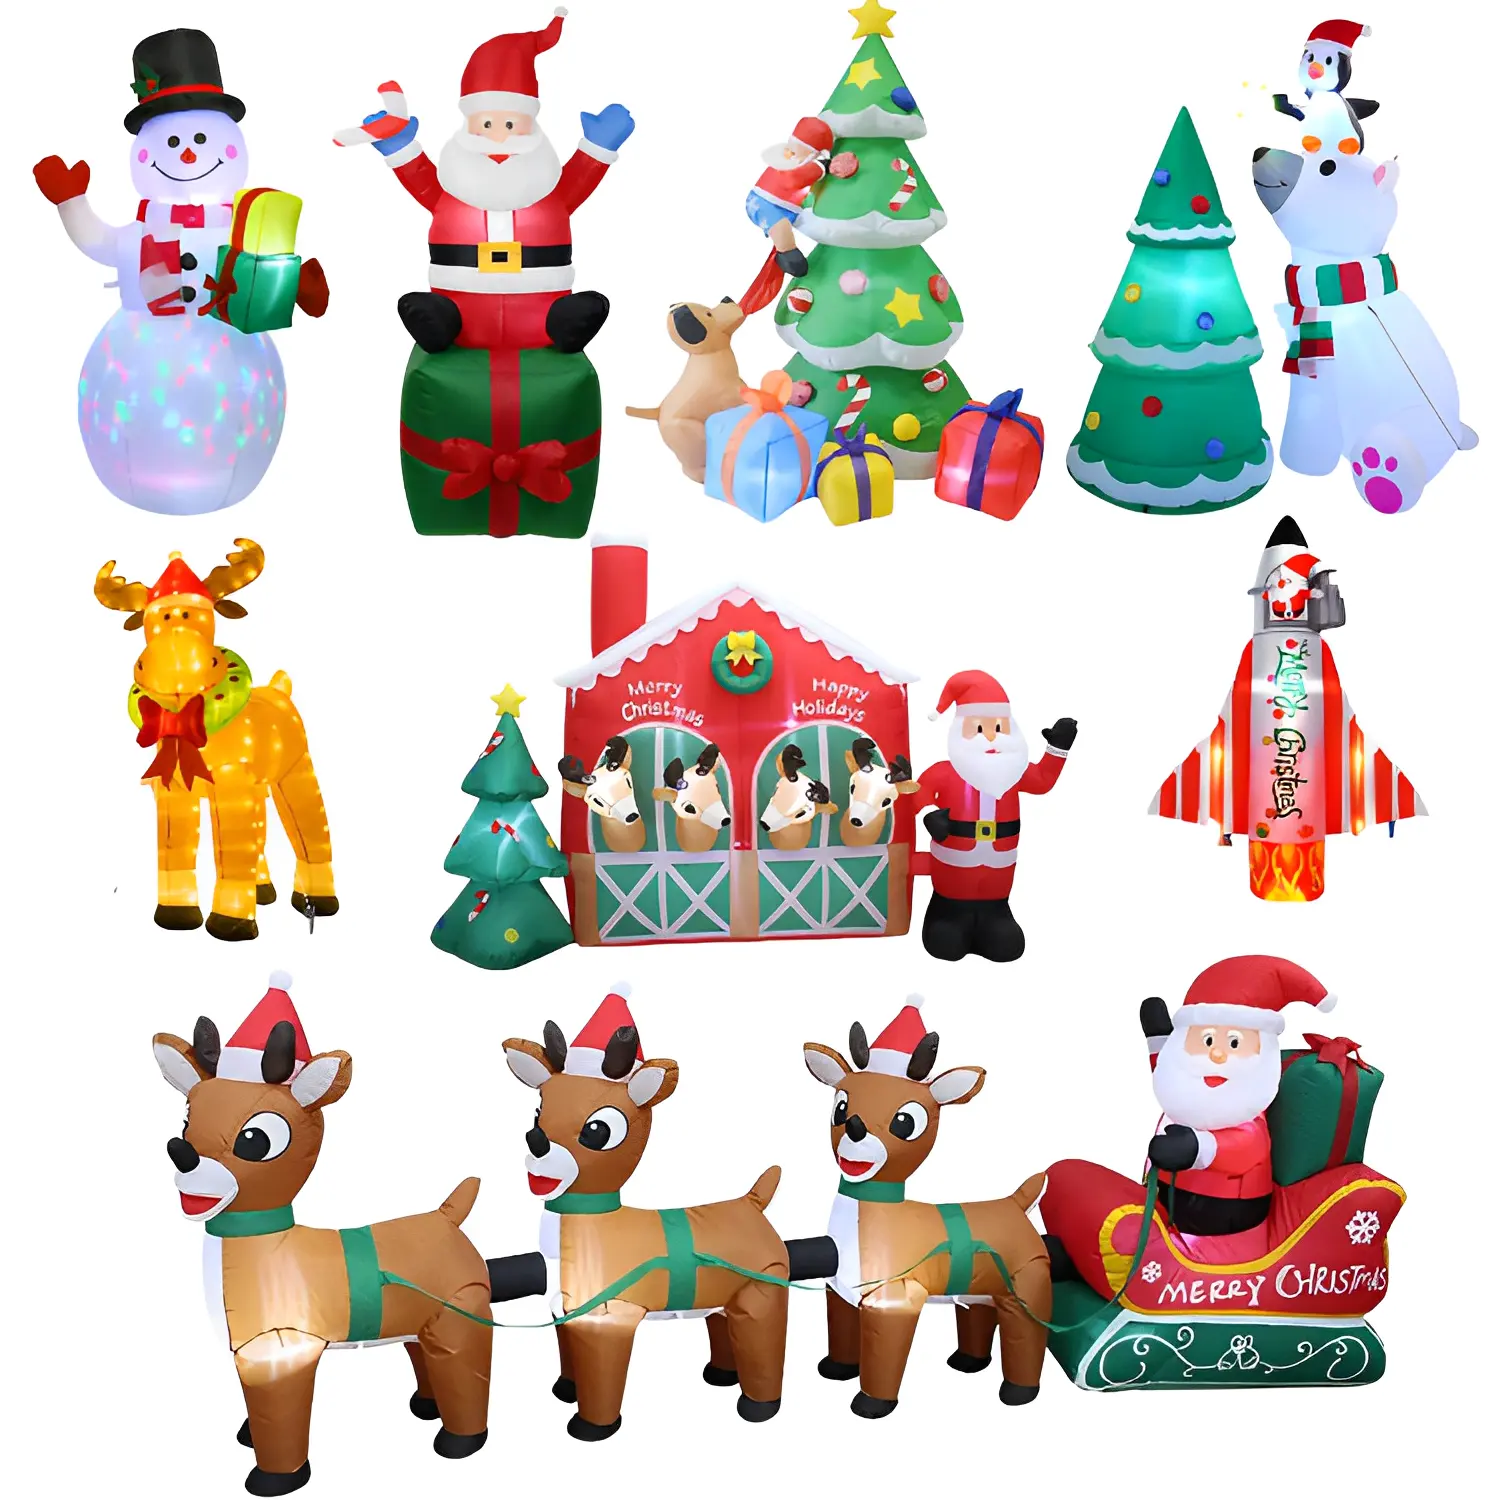 3-10ft Outdoor Christmas Santa cláusula Boneco de neve árvore Inflável quintal Decoração inflat ornamento adornos de navidad inflables